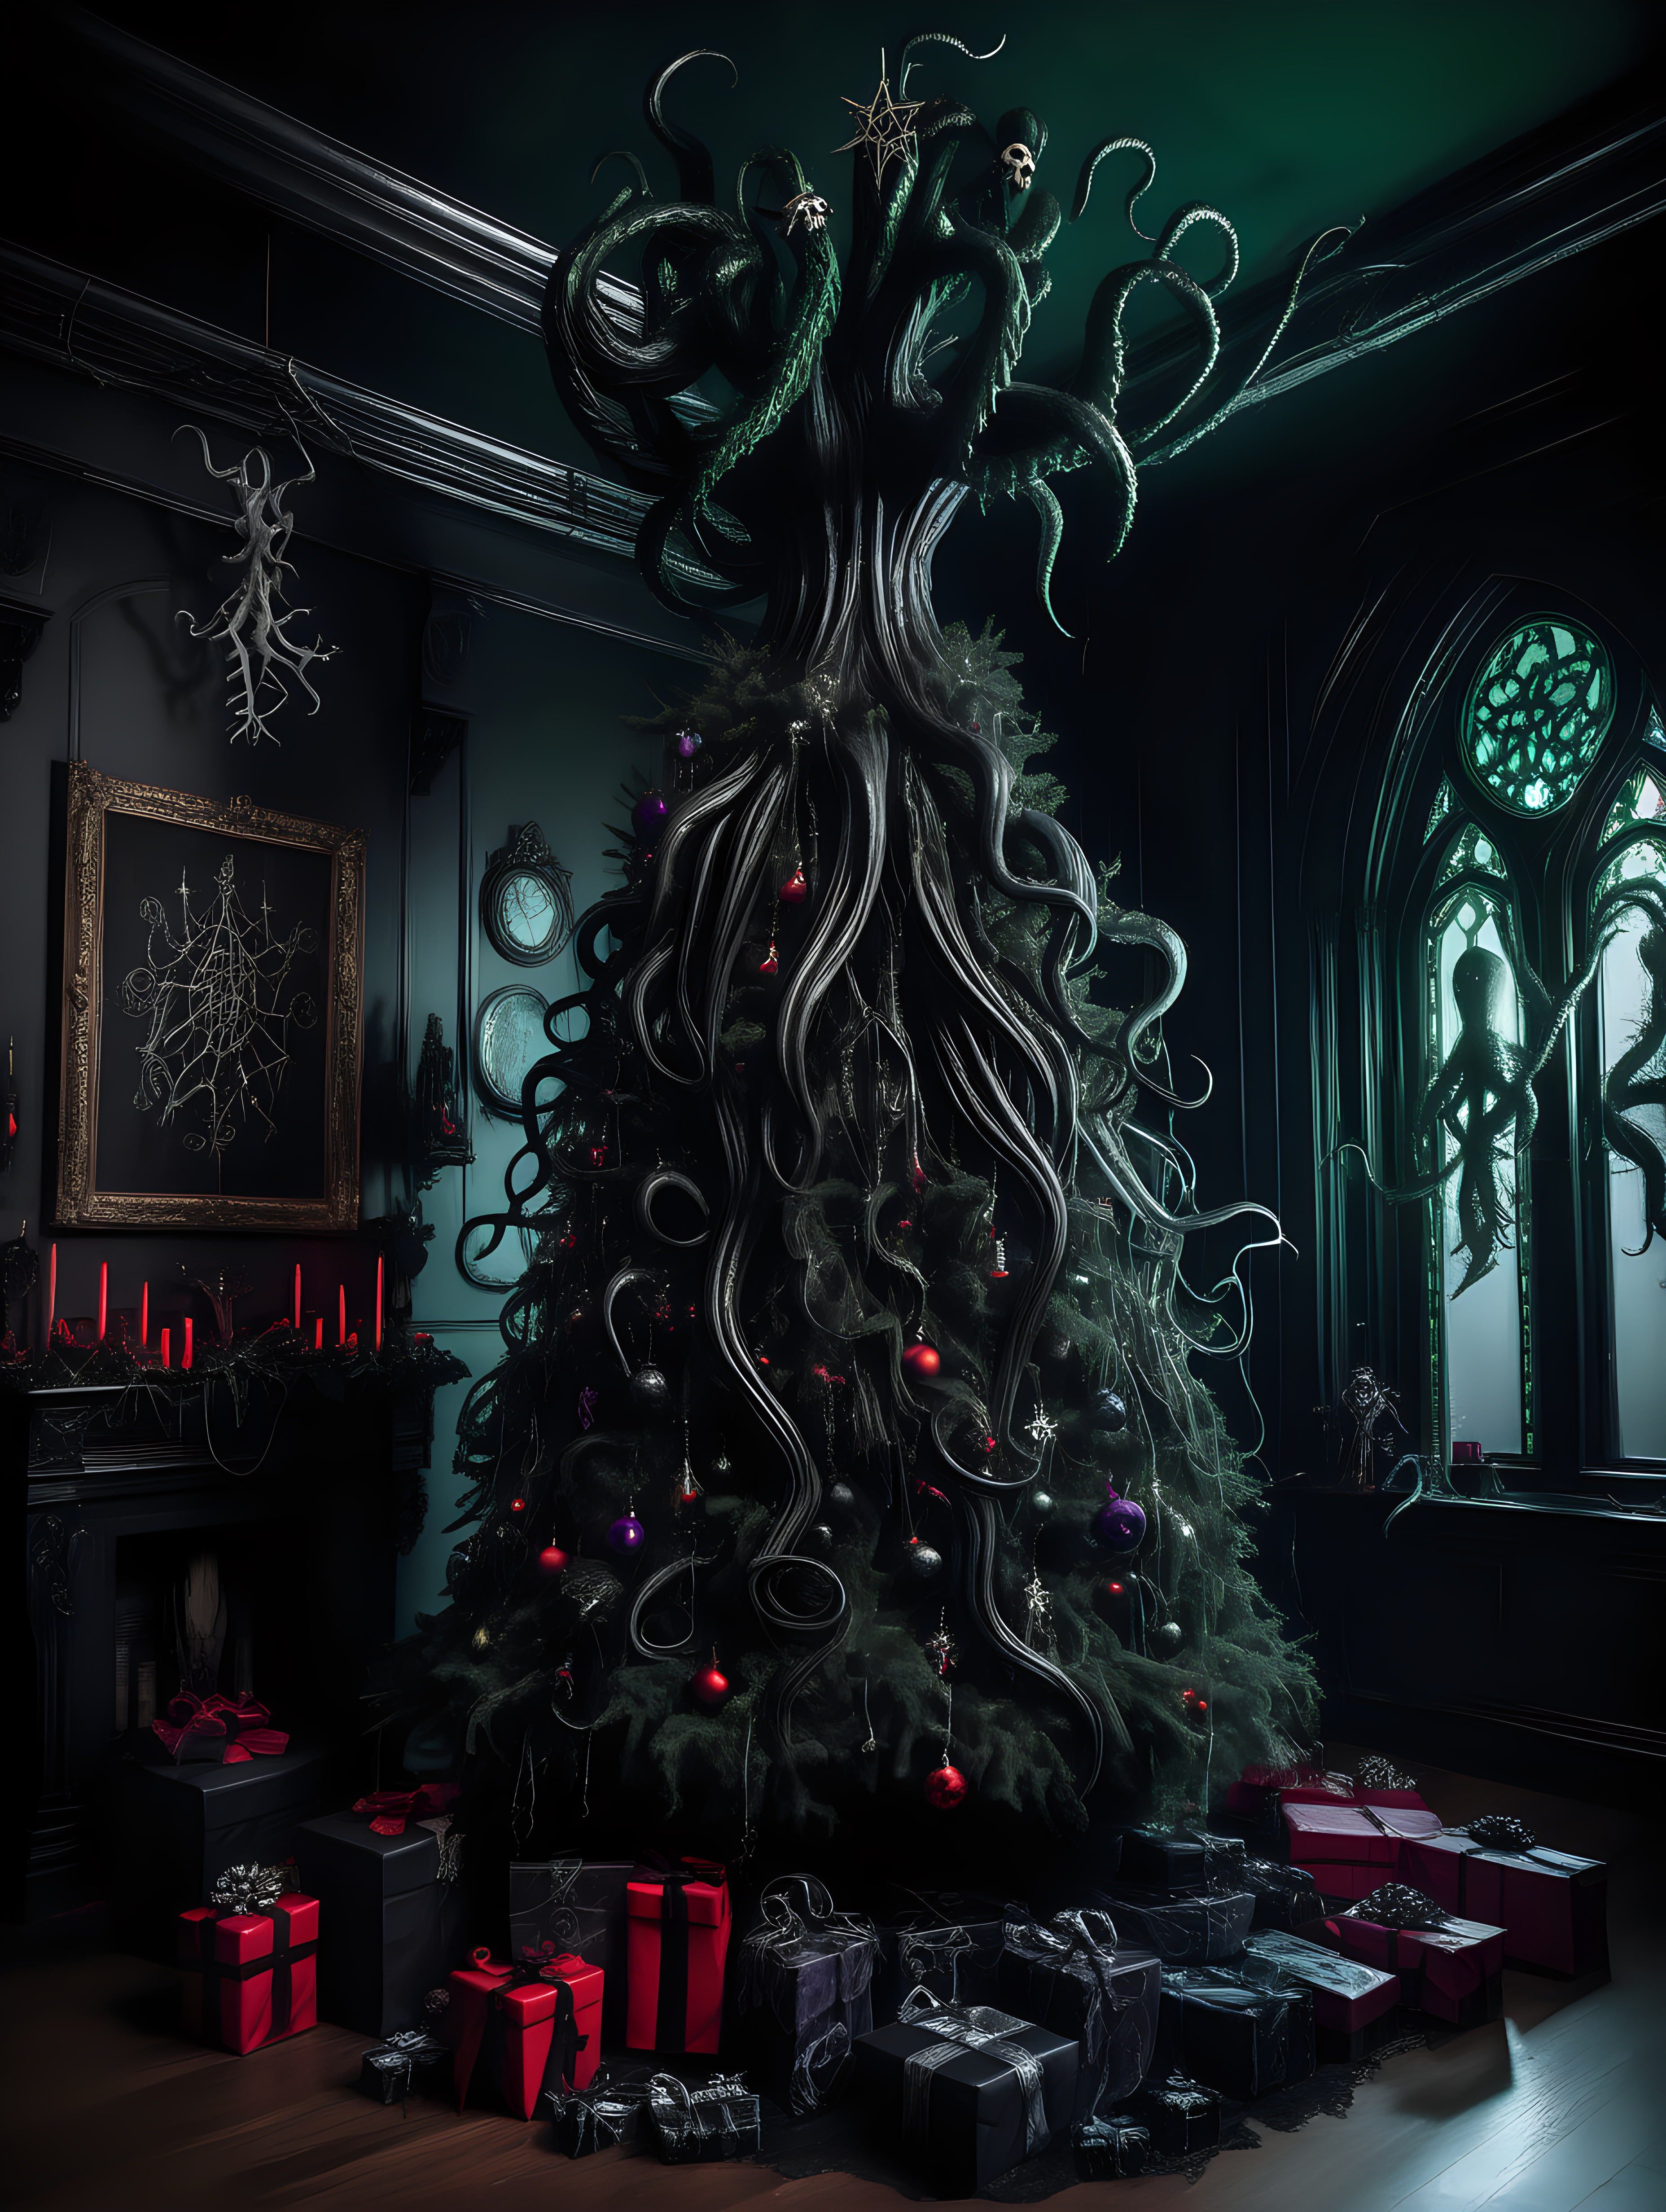 A dark gothic Christmas tree in a dark